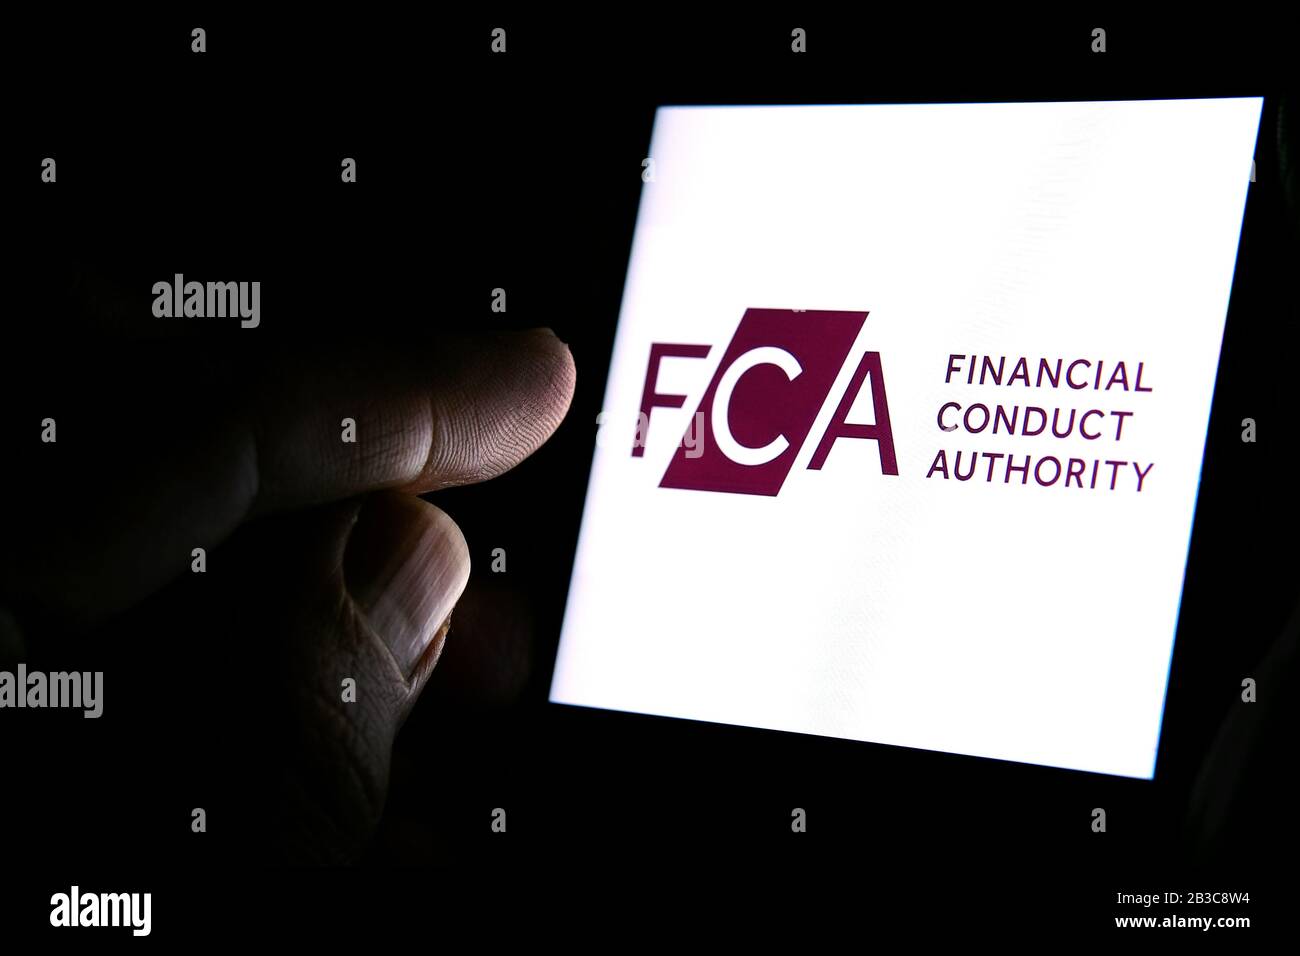 Logo FCA Financial Conduct Authority sullo smartphone e dito che lo indica nella stanza buia. Concetto. FCA è un organismo di regolamentazione finanziaria nel Regno Unito Foto Stock